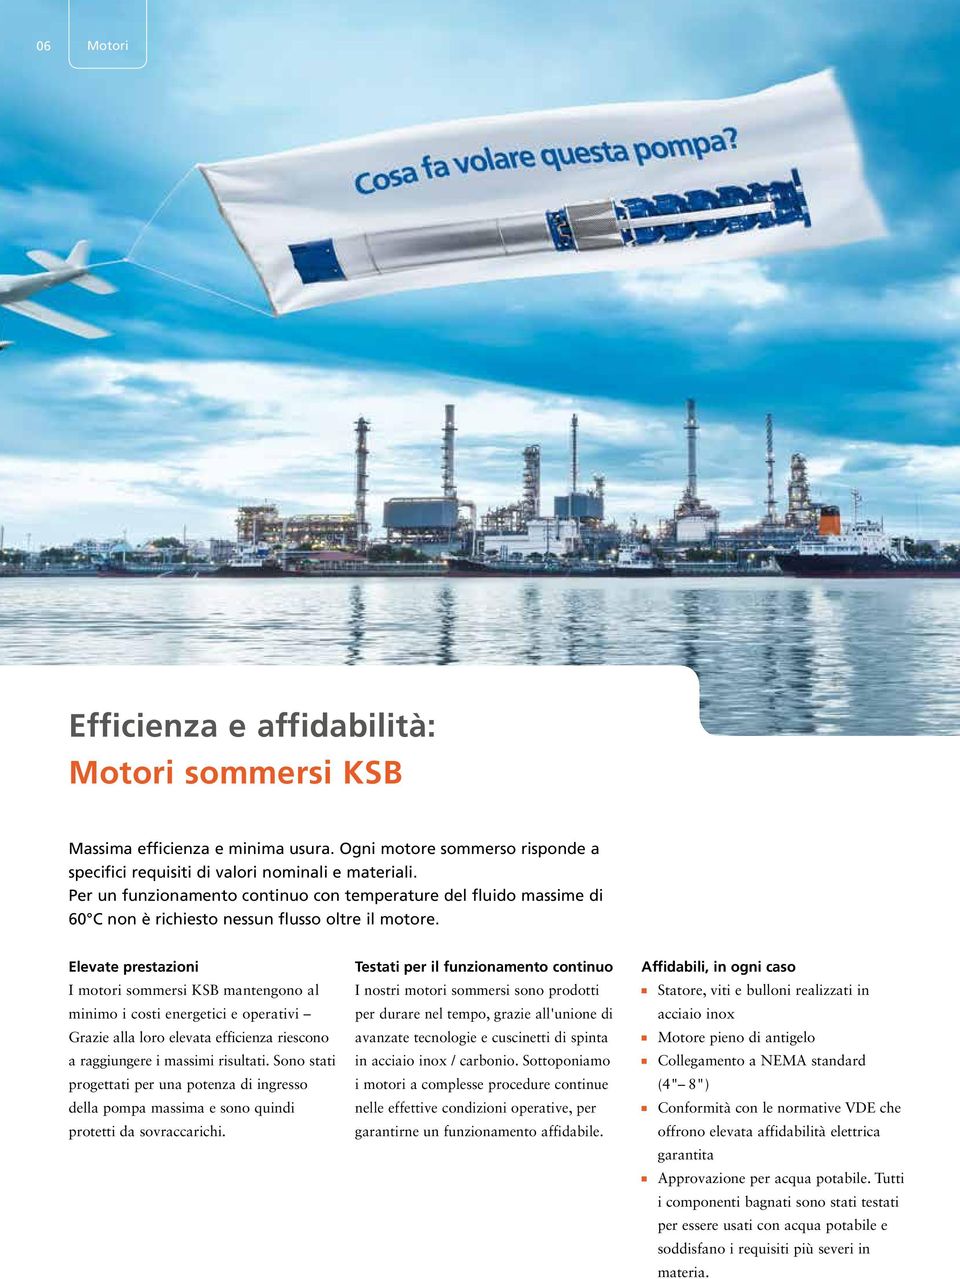 Elevate prestazioni I motori sommersi KSB mantengono al minimo i costi energetici e operativi Grazie alla loro elevata efficienza riescono a raggiungere i massimi risultati.